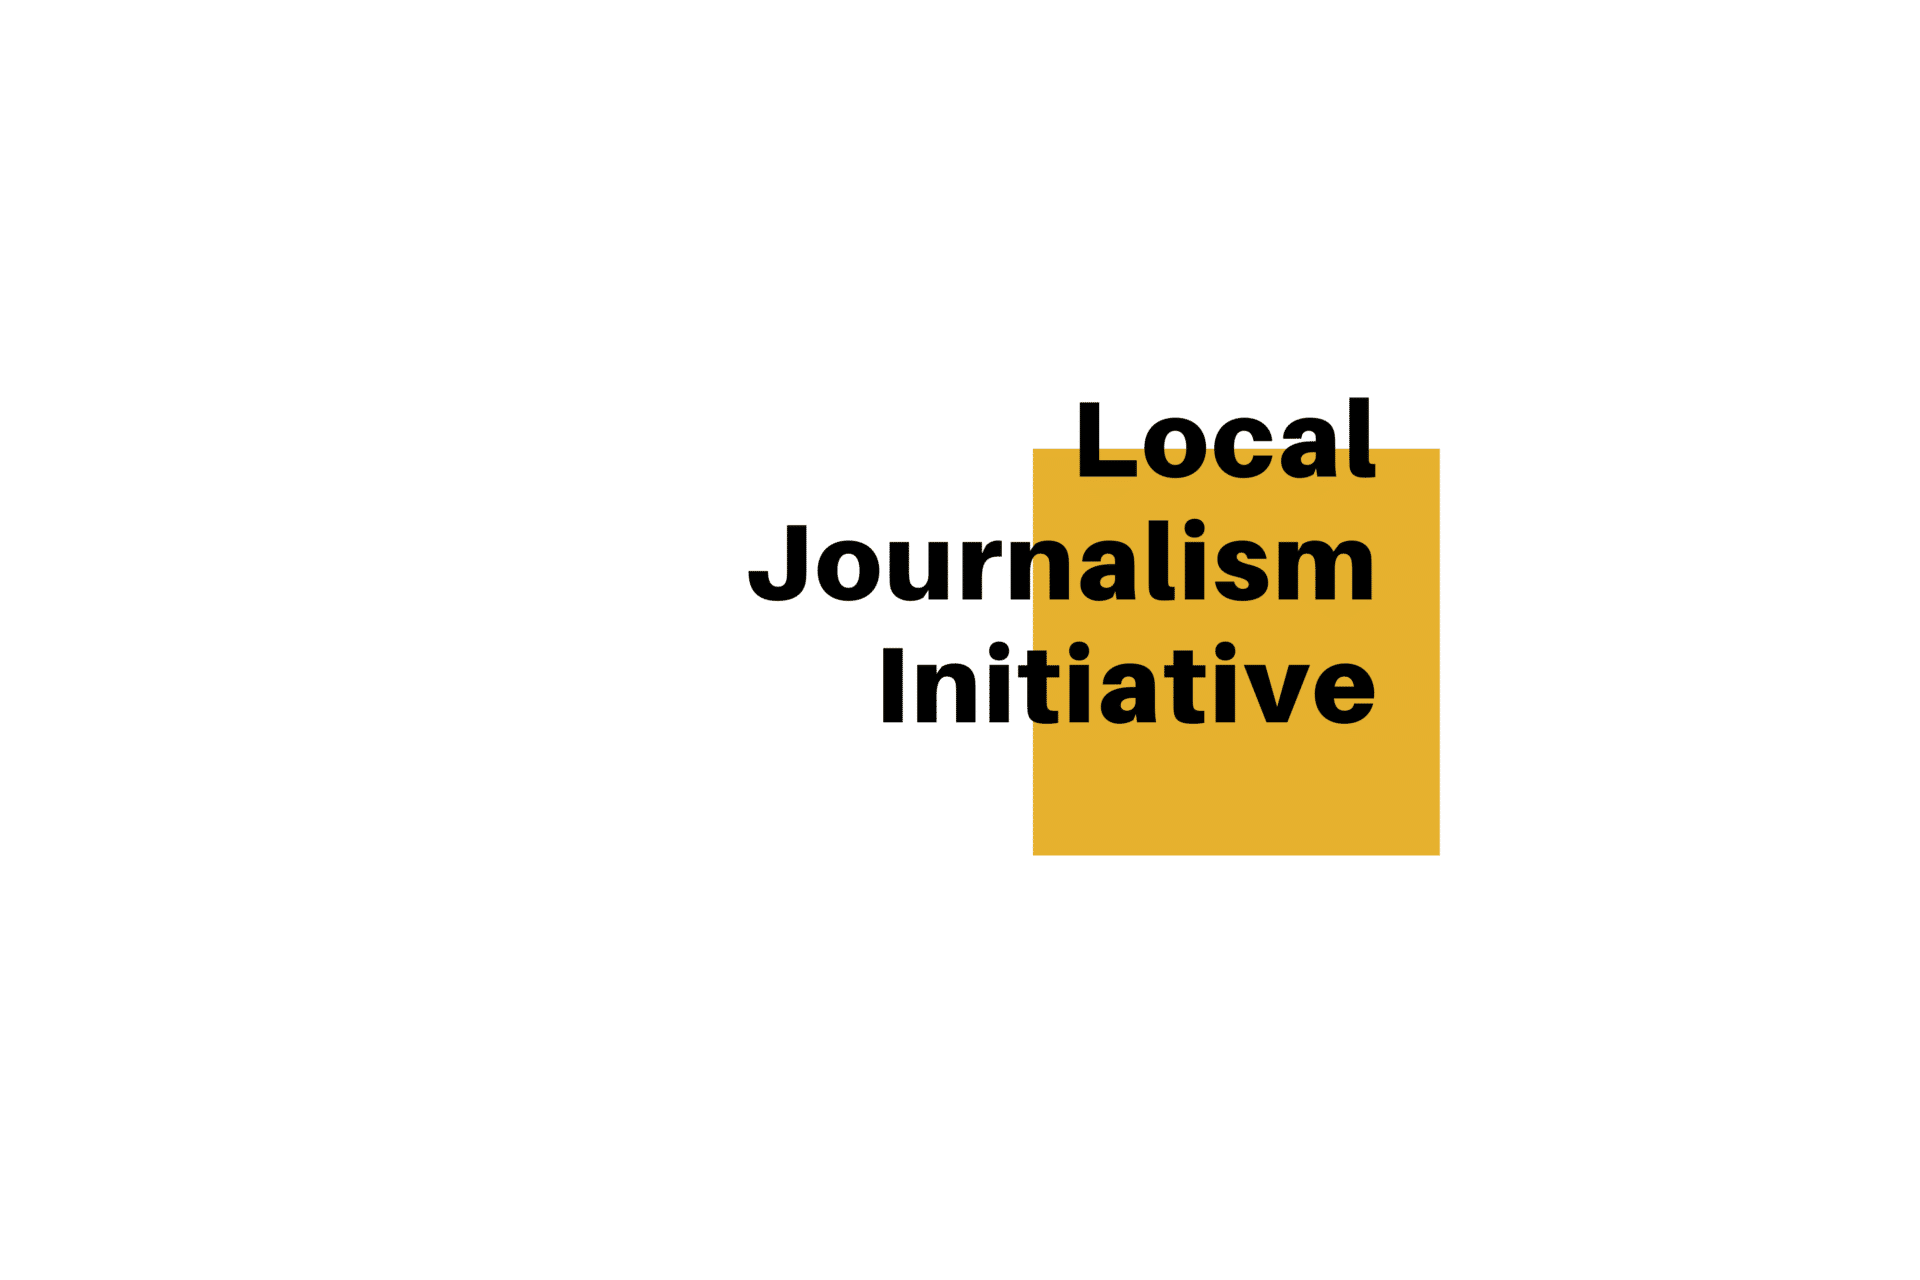 Local Journalism Initiative - title card